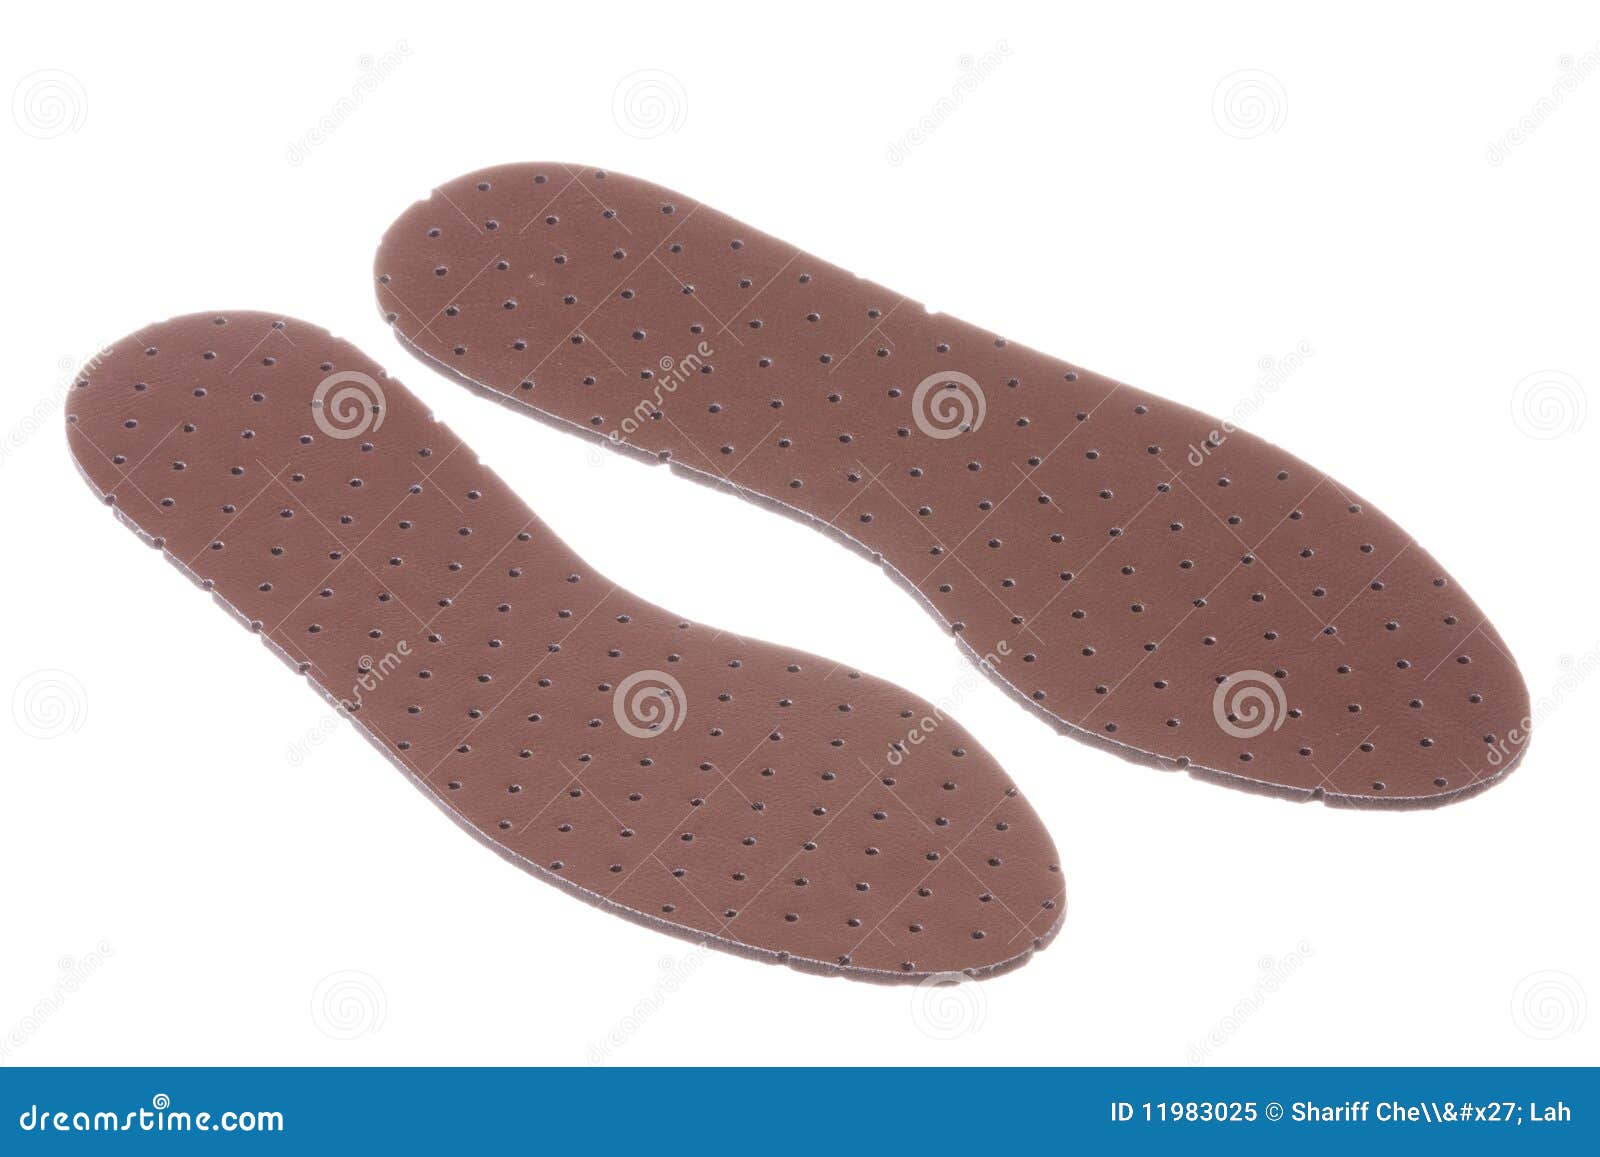 leather shoe insole padding 